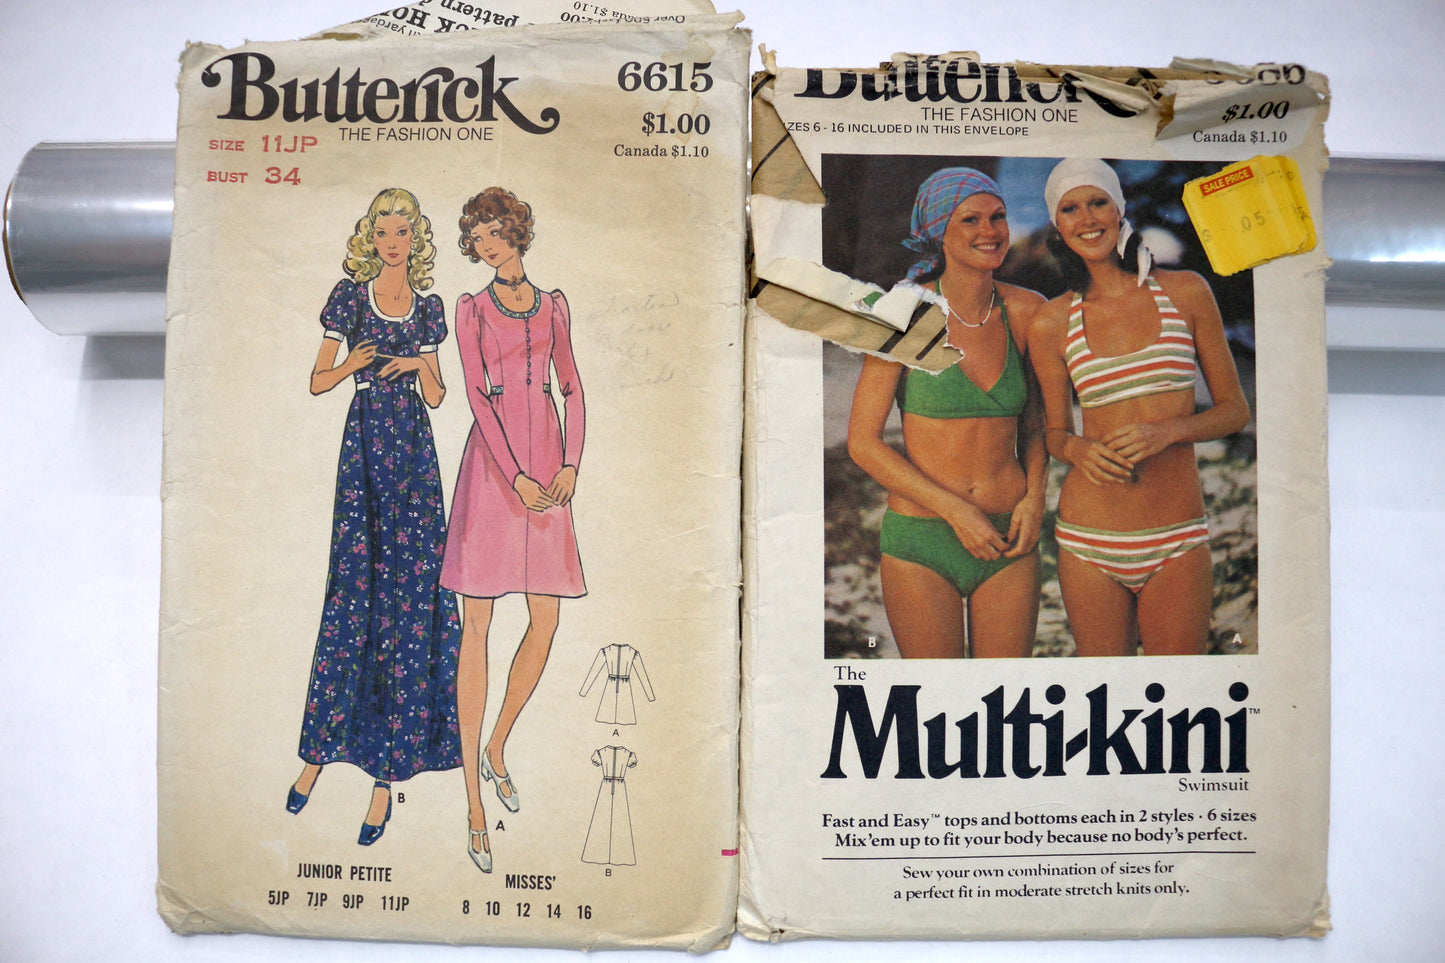 Butterick 6615 Dress Sewing Pattern or Butterick 3686 Bikini Sewing Pattern